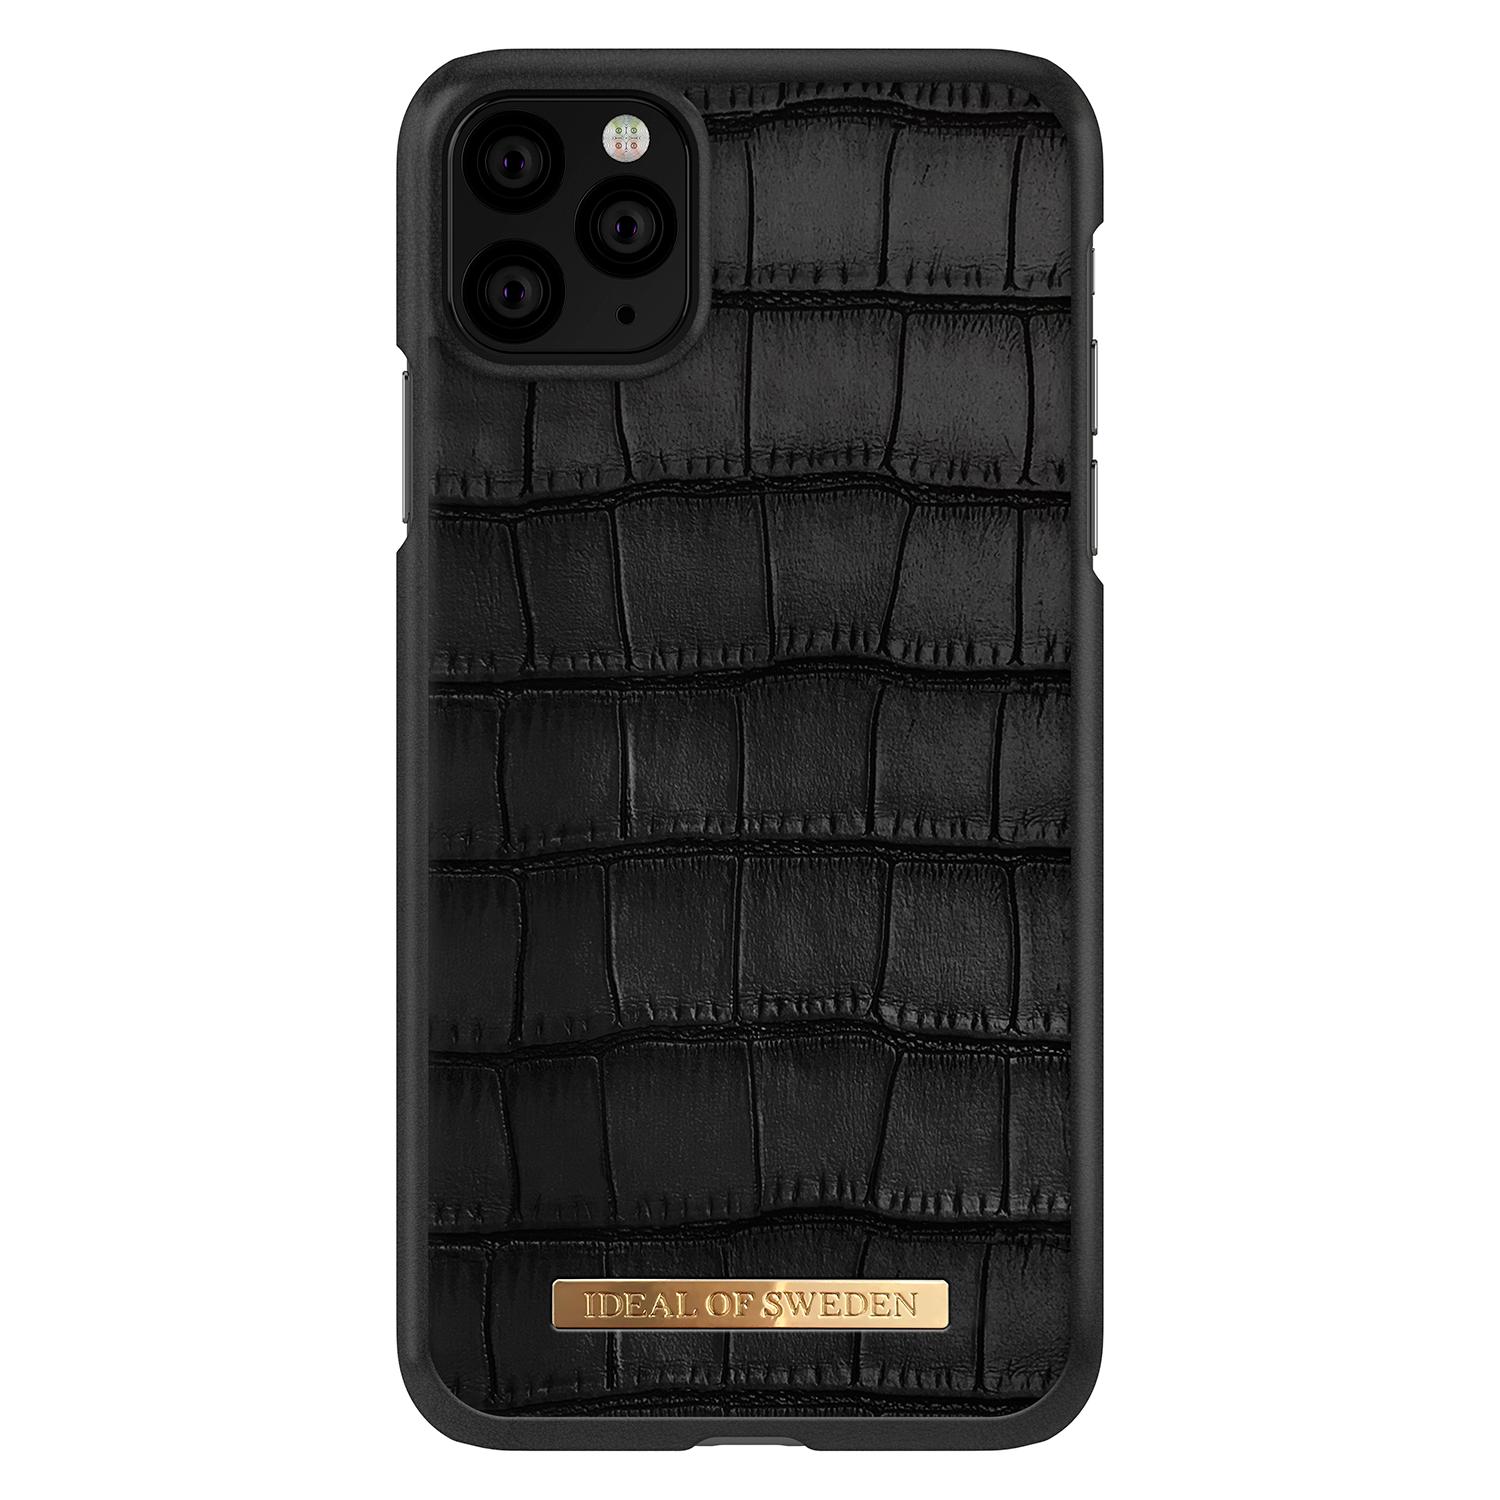 Capri Case iPhone 11 Pro Max Black